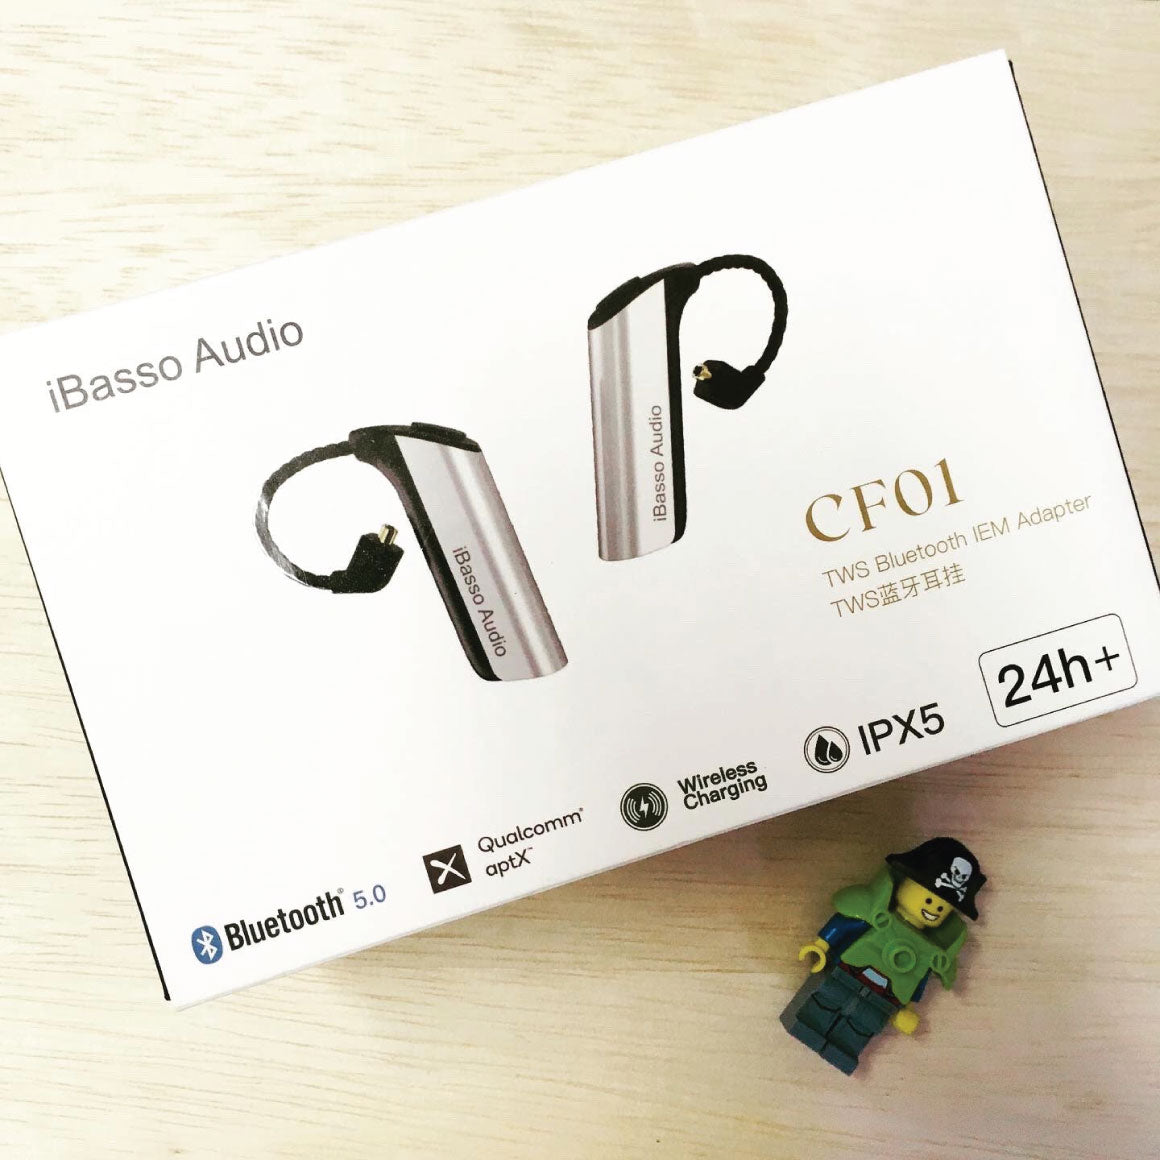 ファッションファッションiBasso Audio(アイバッソ オーディオ) TWS Bluetooth IEM Adapter CF01 スピーカー 